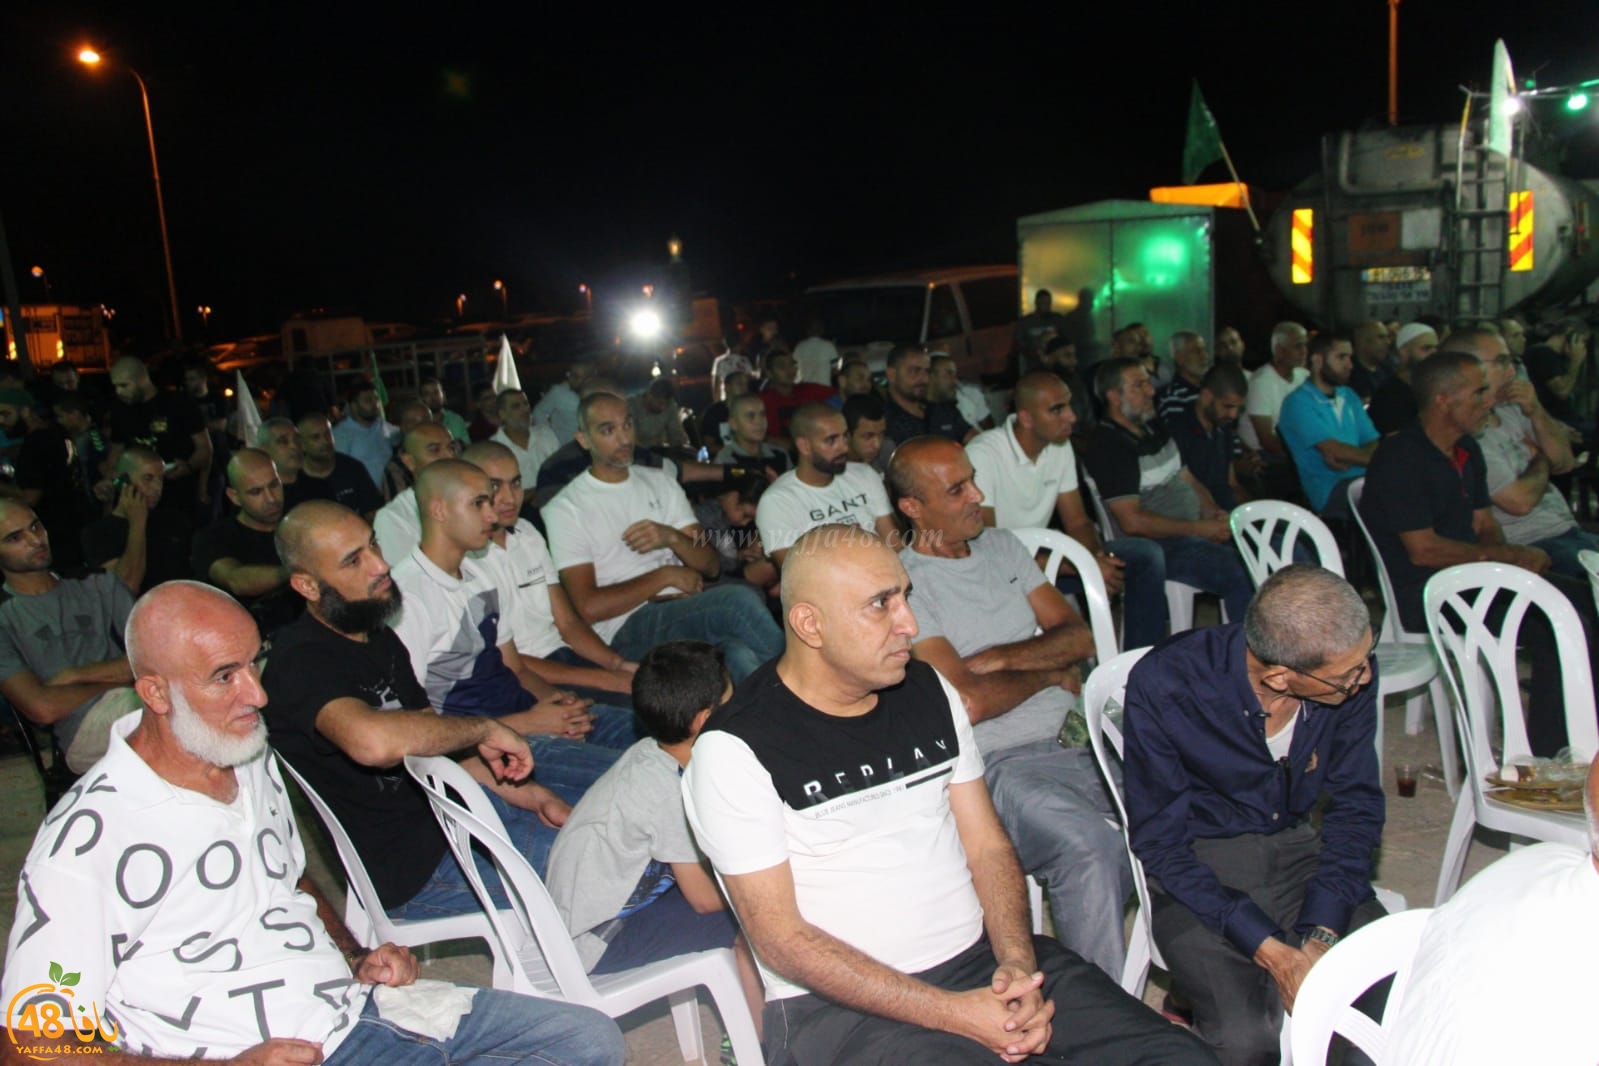   بالصور: خيمة الهدى الدعوية بيافا تستضيف الشيخ عثمان ابو بكر 